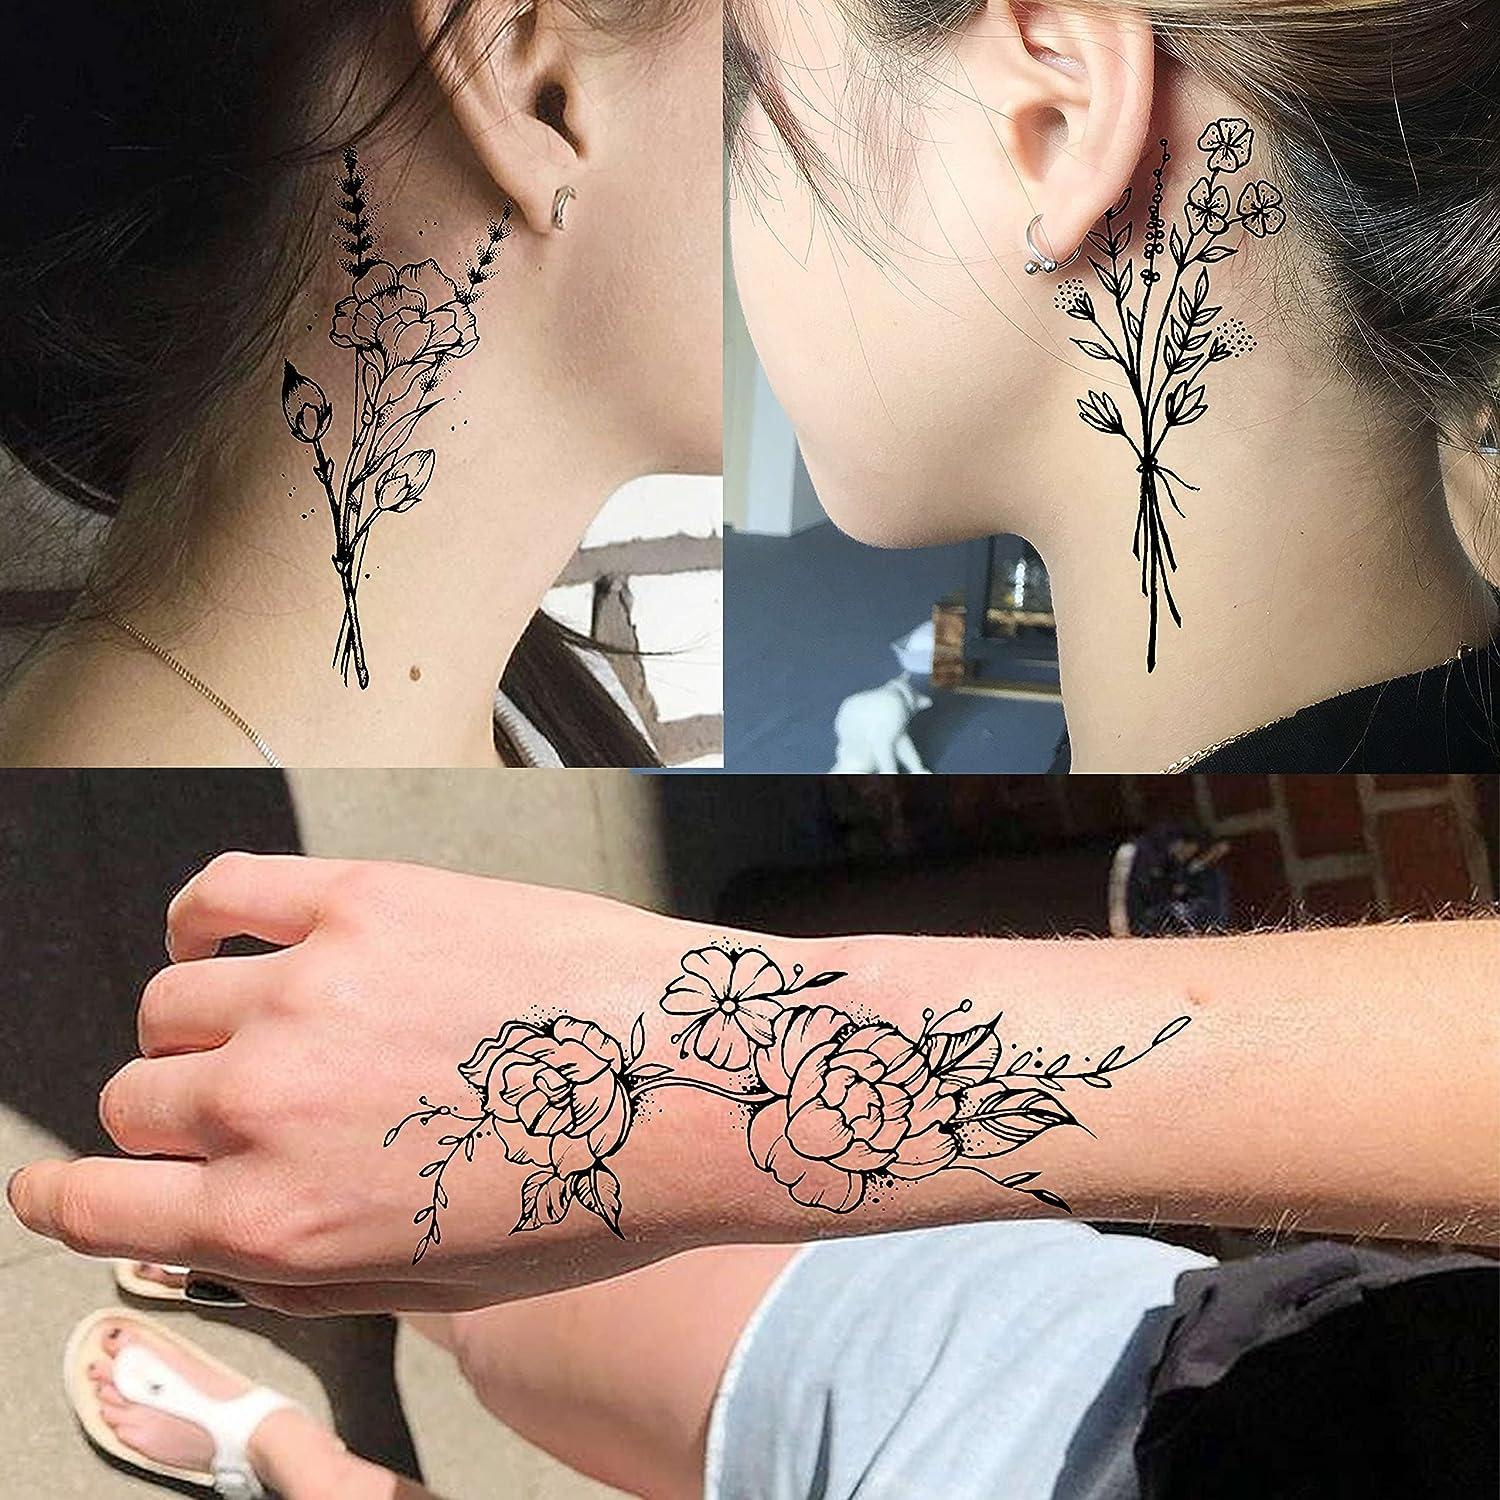 Forty-One-Tattoo - Flower Neck Tattoo #tattooarthamburg #tattoo  #tattoorealism #tattoorealistic #blackandgrey #blackandgreytattoo  #finetattoo #flowertattoo #flowertattoos #floraltattoo #darktattoo # necktattoo #hamburgtattoo #tattooidea #bnginksociety ...